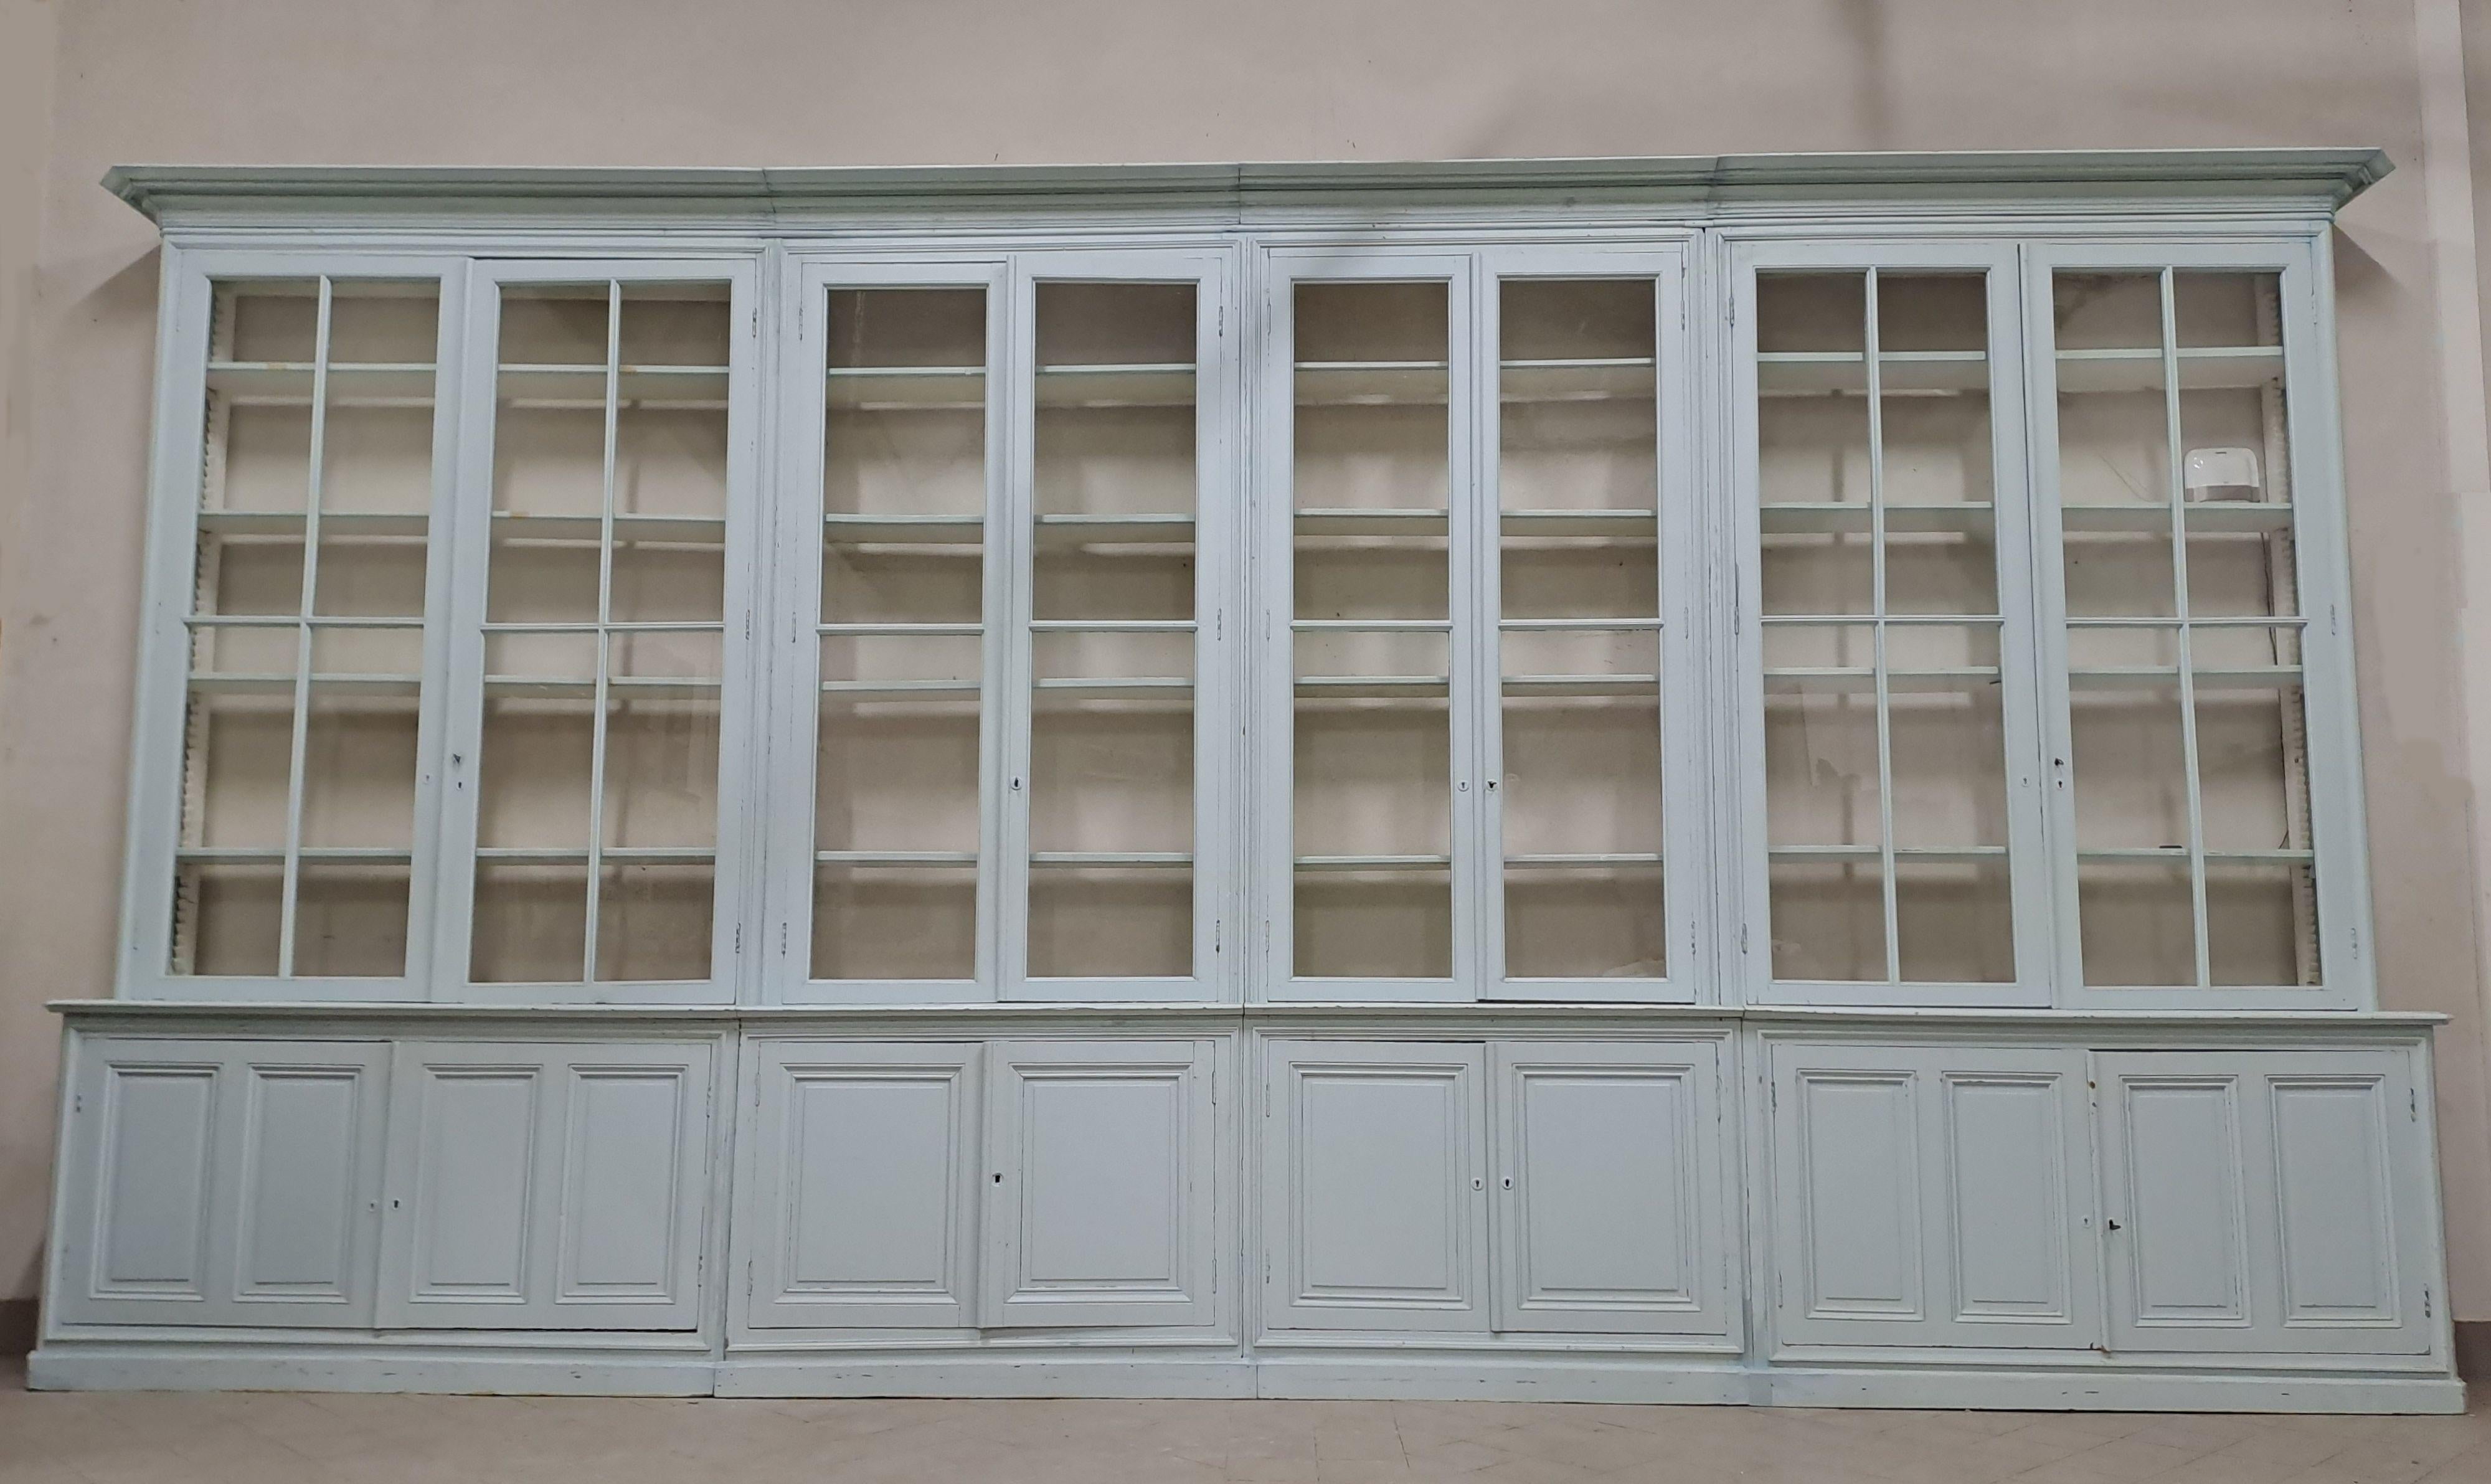 Sehr großes Bücherregal aus weiß/himmelblau lackiertem Tannenholz, zu öffnen mit vier doppelten Glastüren im oberen Teil und vier massiven Doppeltüren im unteren Teil.

Arbeiten aus dem 19. Jahrhundert, profilierte und getäfelte Fassaden und Seiten,